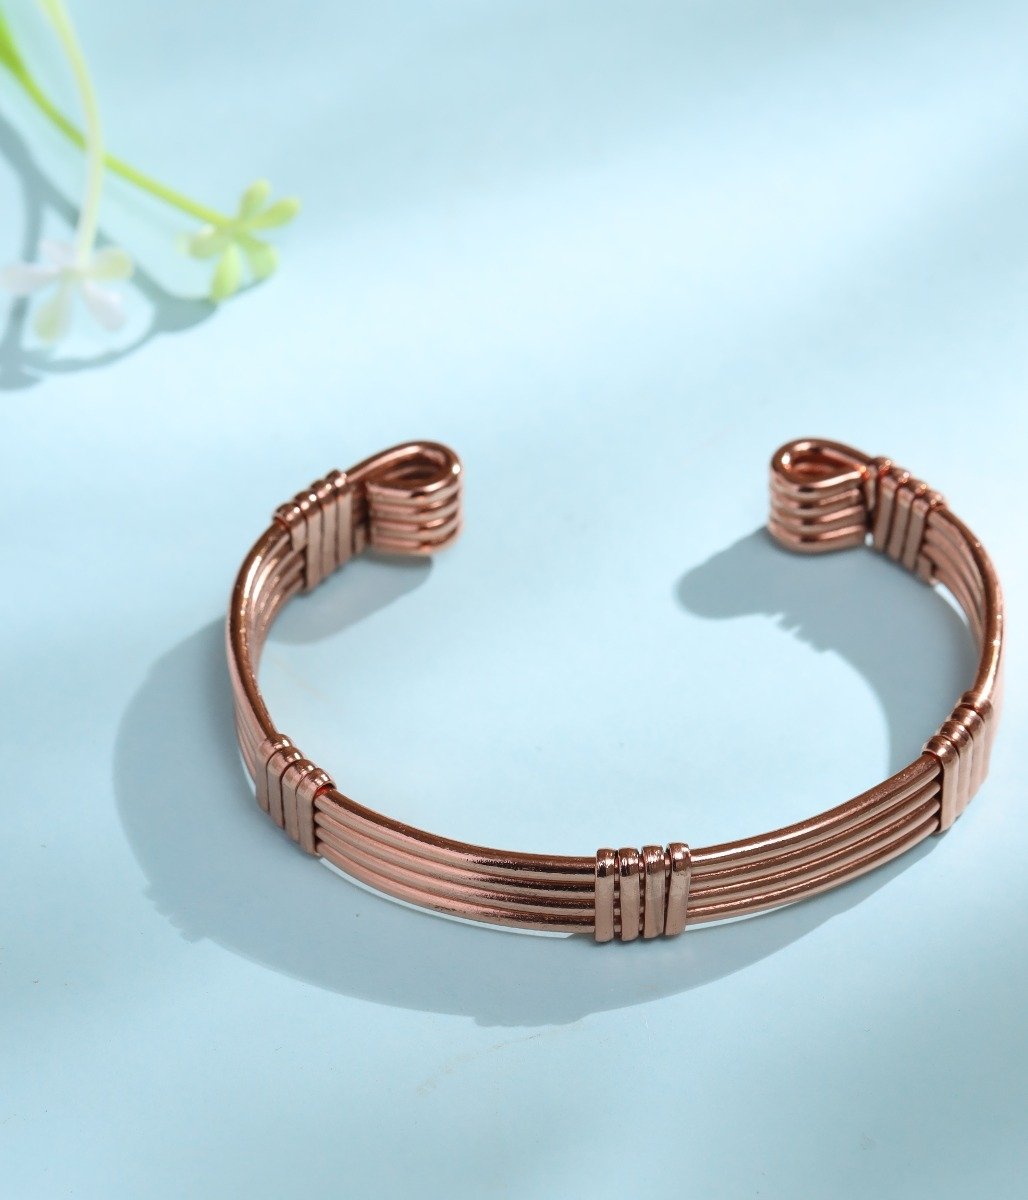 तांबे की अंगूठी पहनने के ज्योतिष लाभों के बारे में कितना जानती हैं आप |  significance of copper ring | HerZindagi